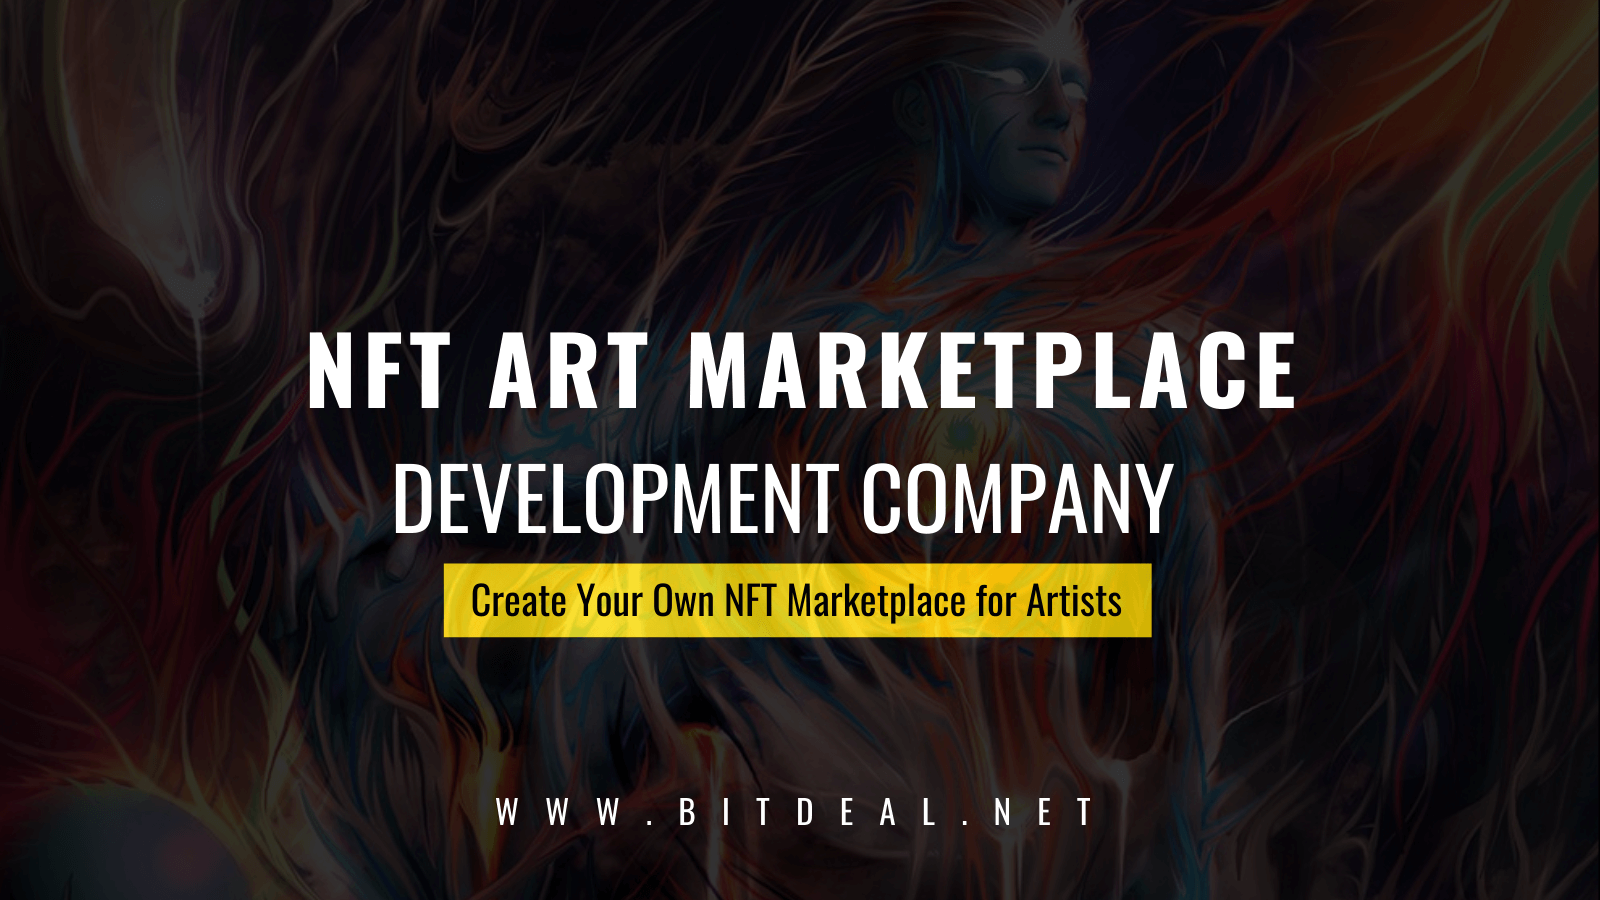 NFT Art Marketplace Development Services - Let's Build Collaborative NFT Marketplaces For Arts